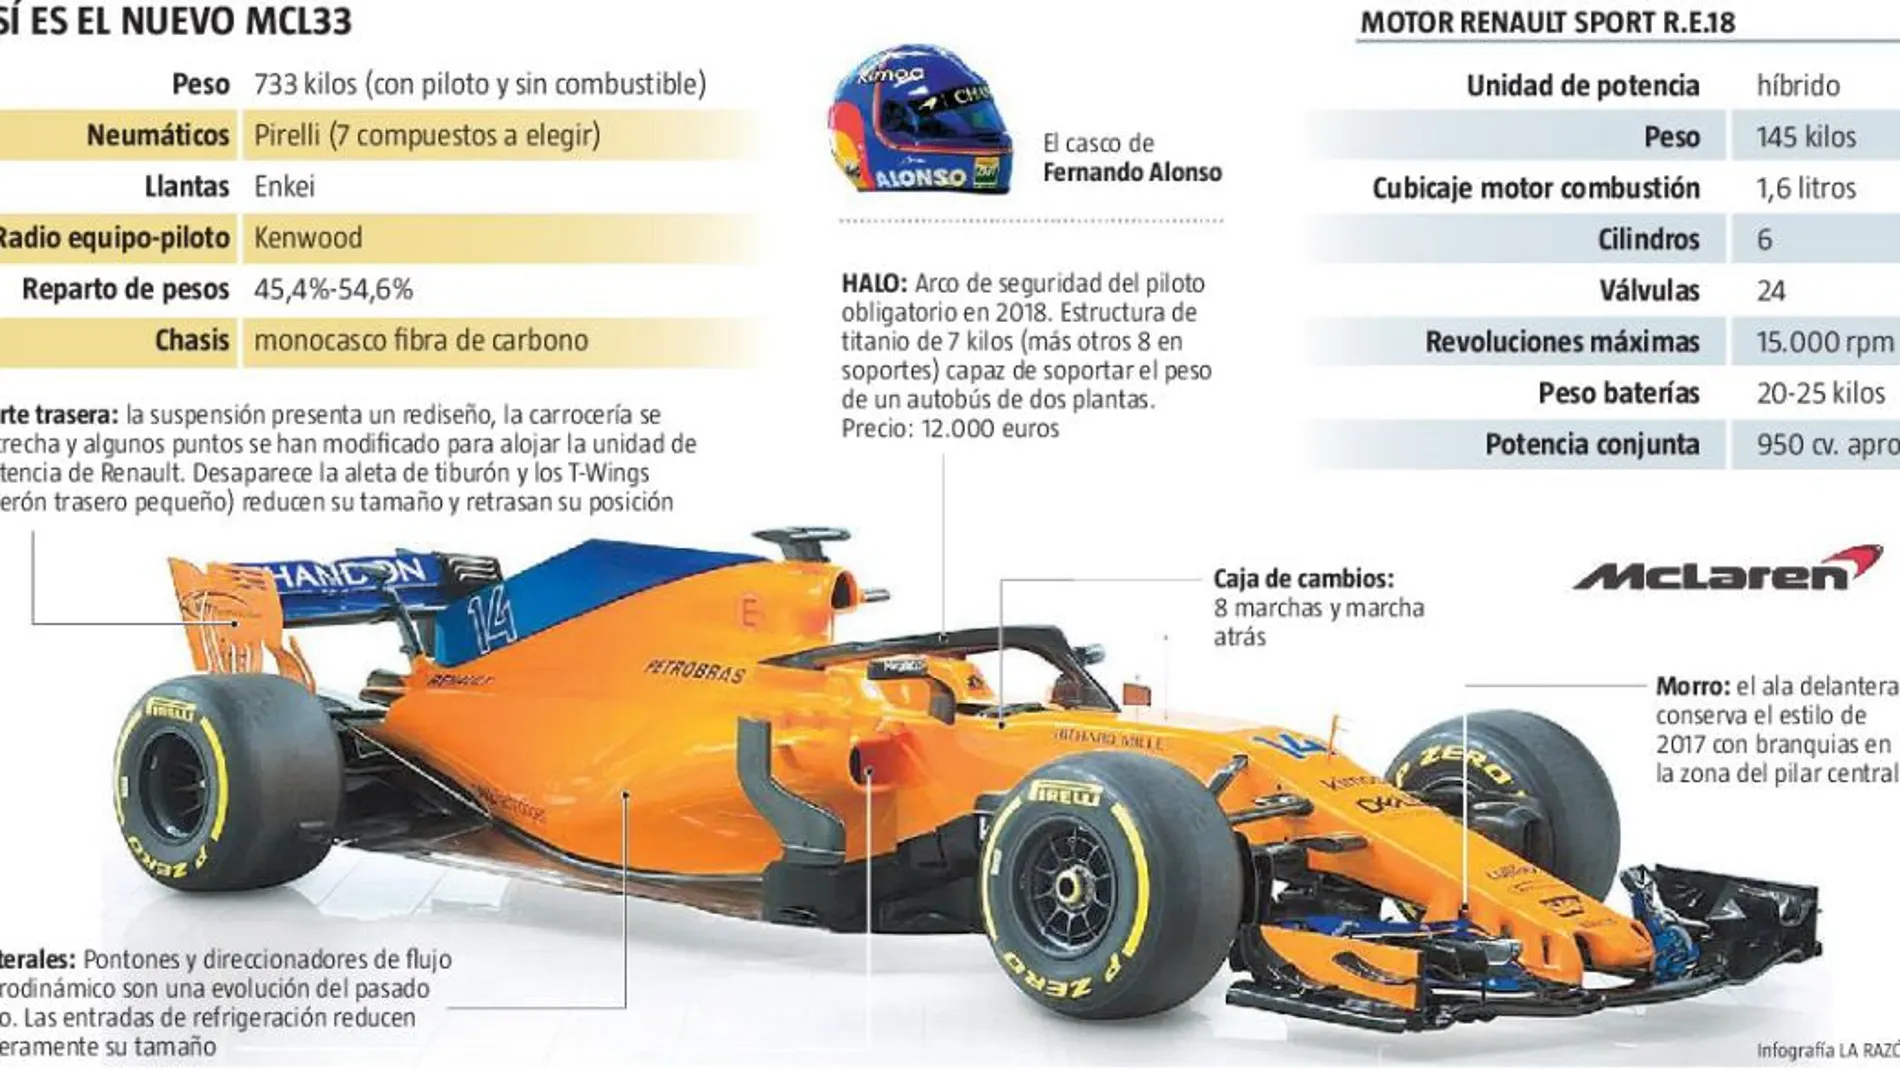 La pretemporada ha empezado de forma muy diferente al pasado año para McLaren, sin tantos problemas de fiabilidad